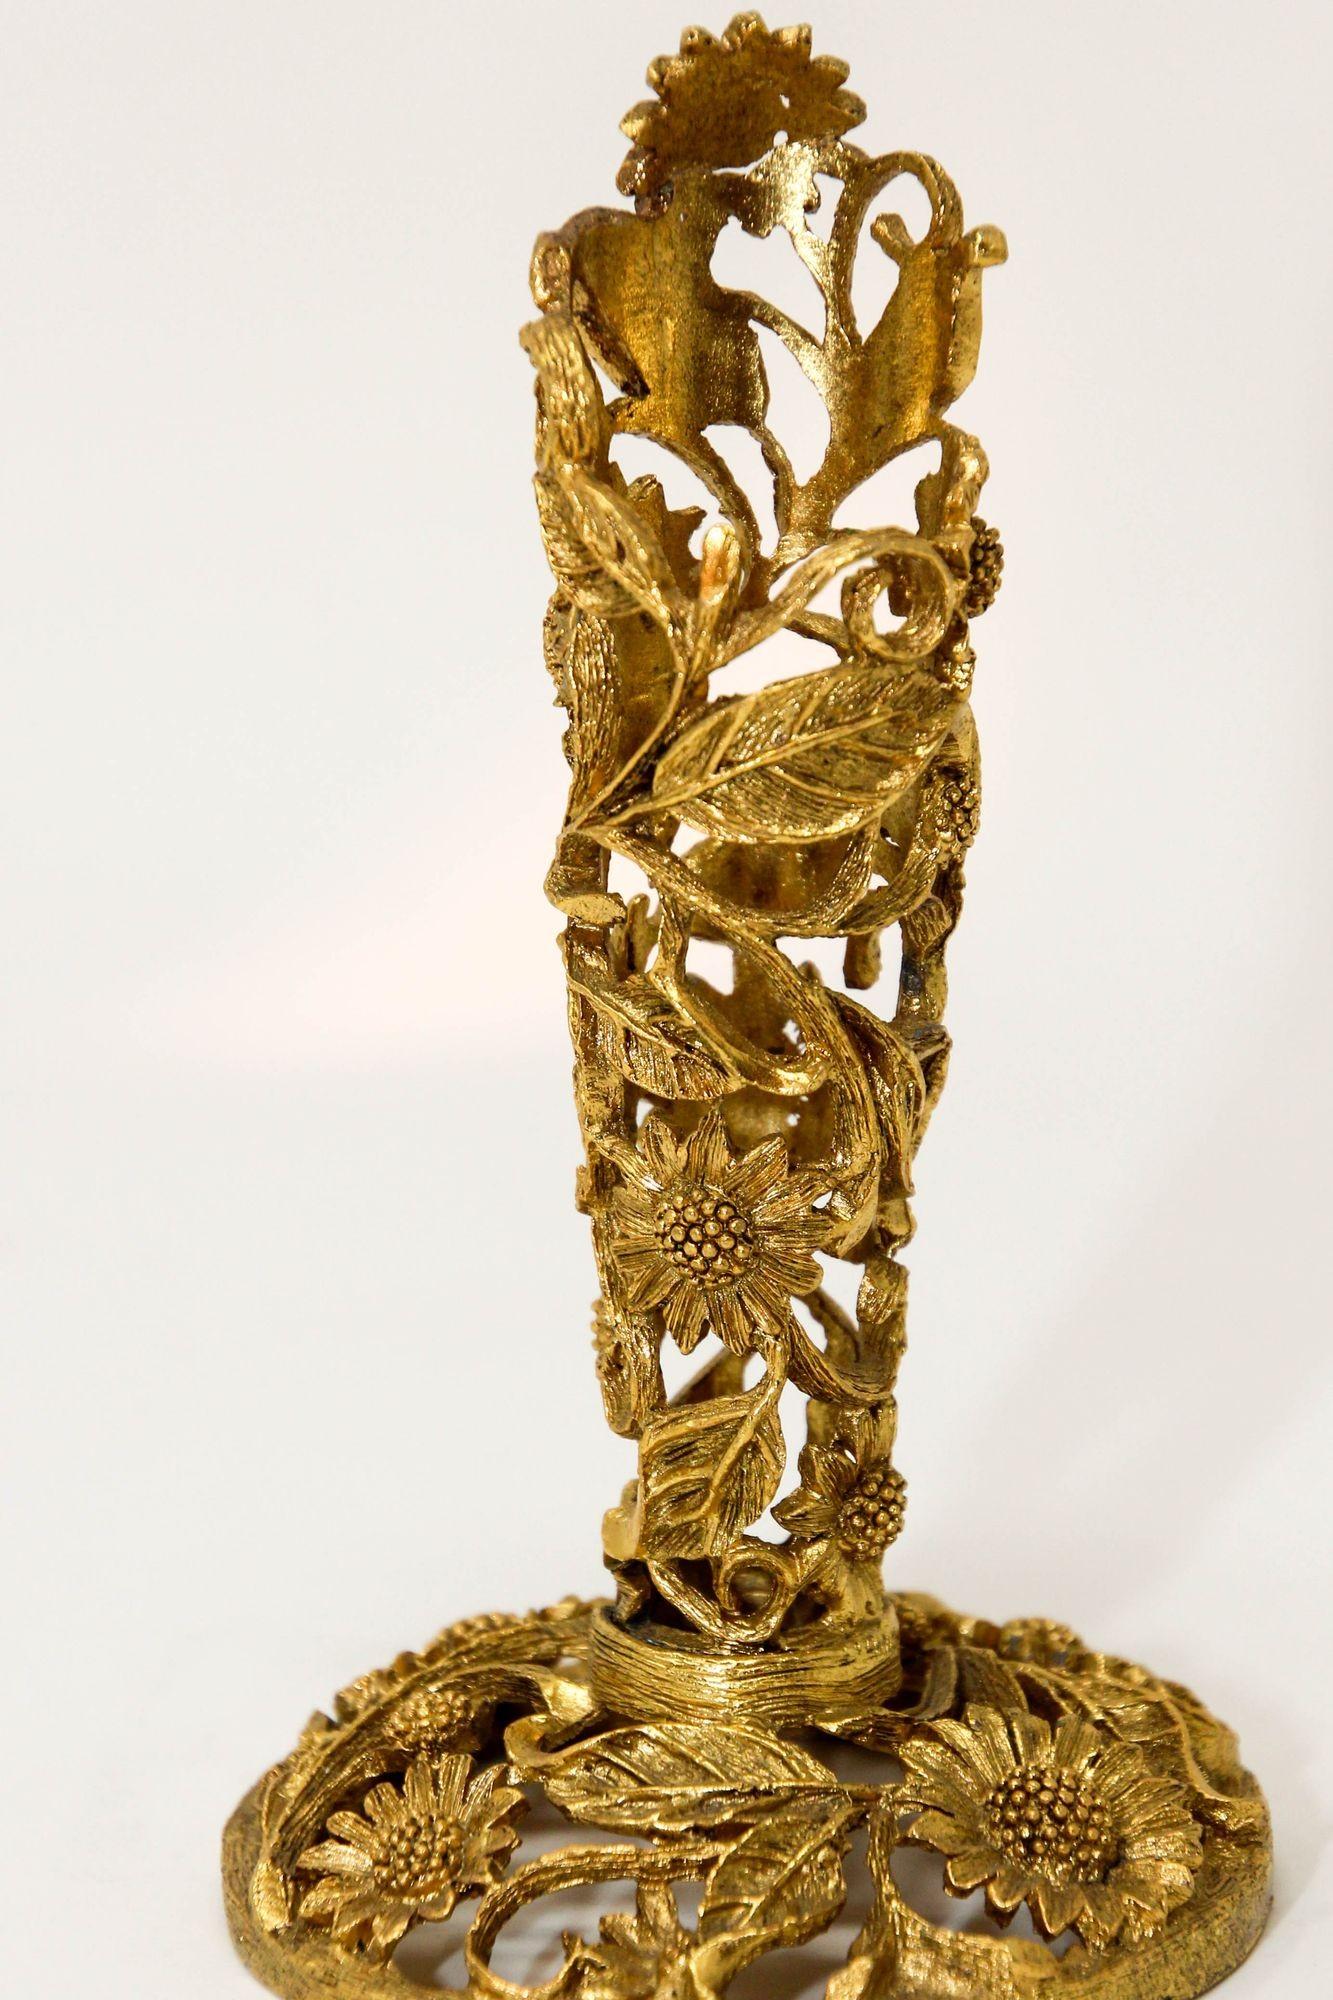 Vintage Matson1960s Ormolu Gold Tone Metal Filigree Bud Glass Vase Holder.
Precioso soporte para jarrón de metal ormolu de filigrana en tono dorado.
Este precioso soporte vintage Ormolu Matson de filigrana floral chapado en oro de 24 quilates es